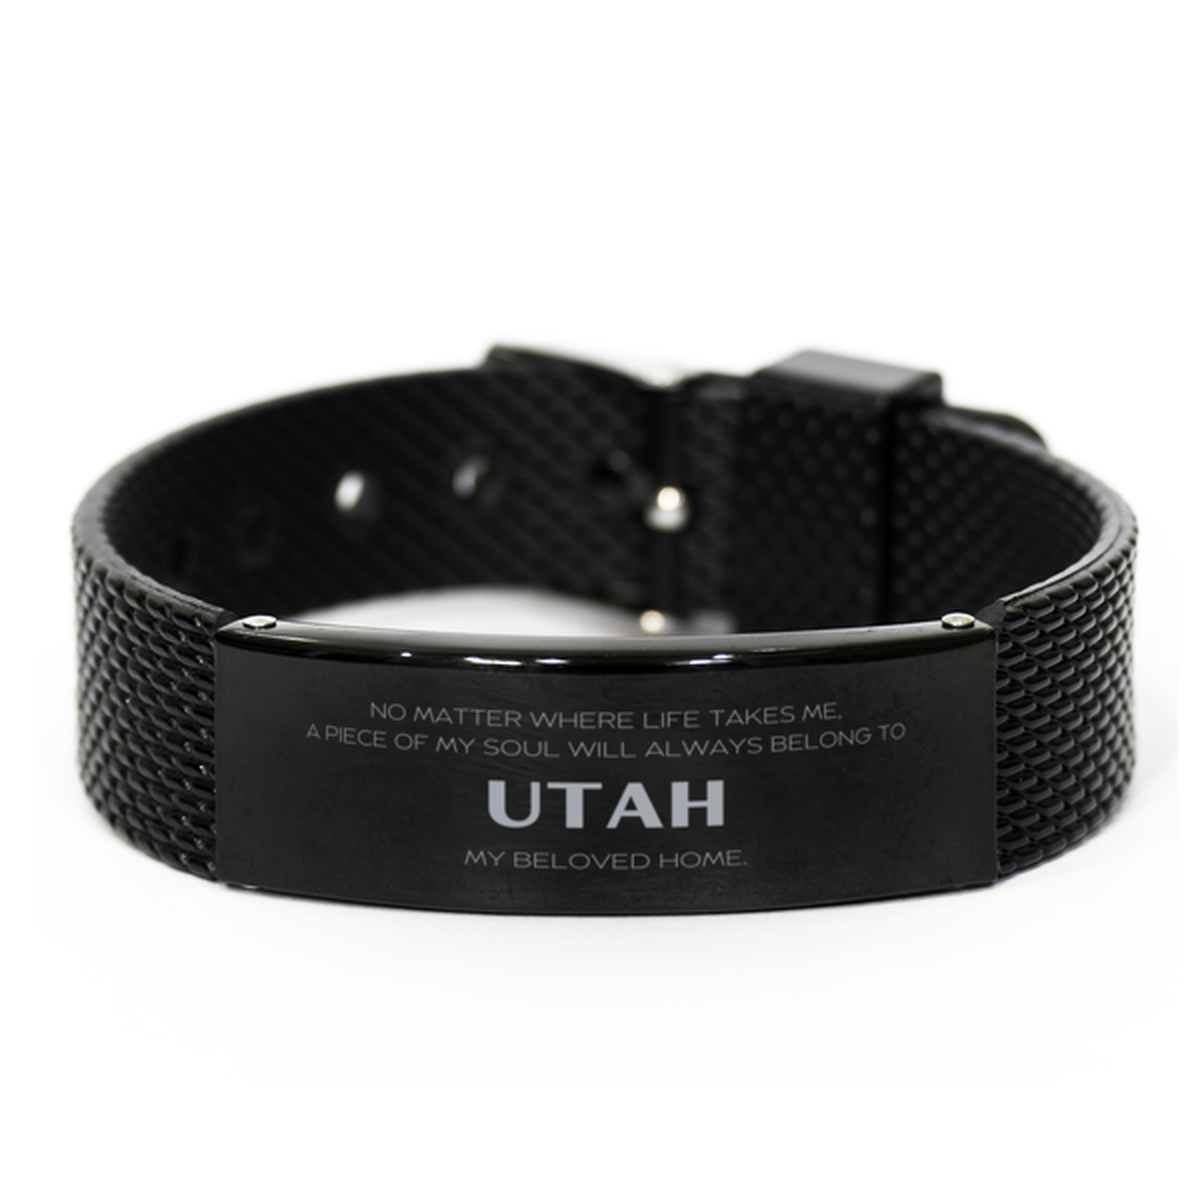 Love Utah State Gifts, My soul will always belong to Utah, Proud Black Shark Mesh Bracelet, Birthday Unique Gifts For Utah Men, Women, Friends